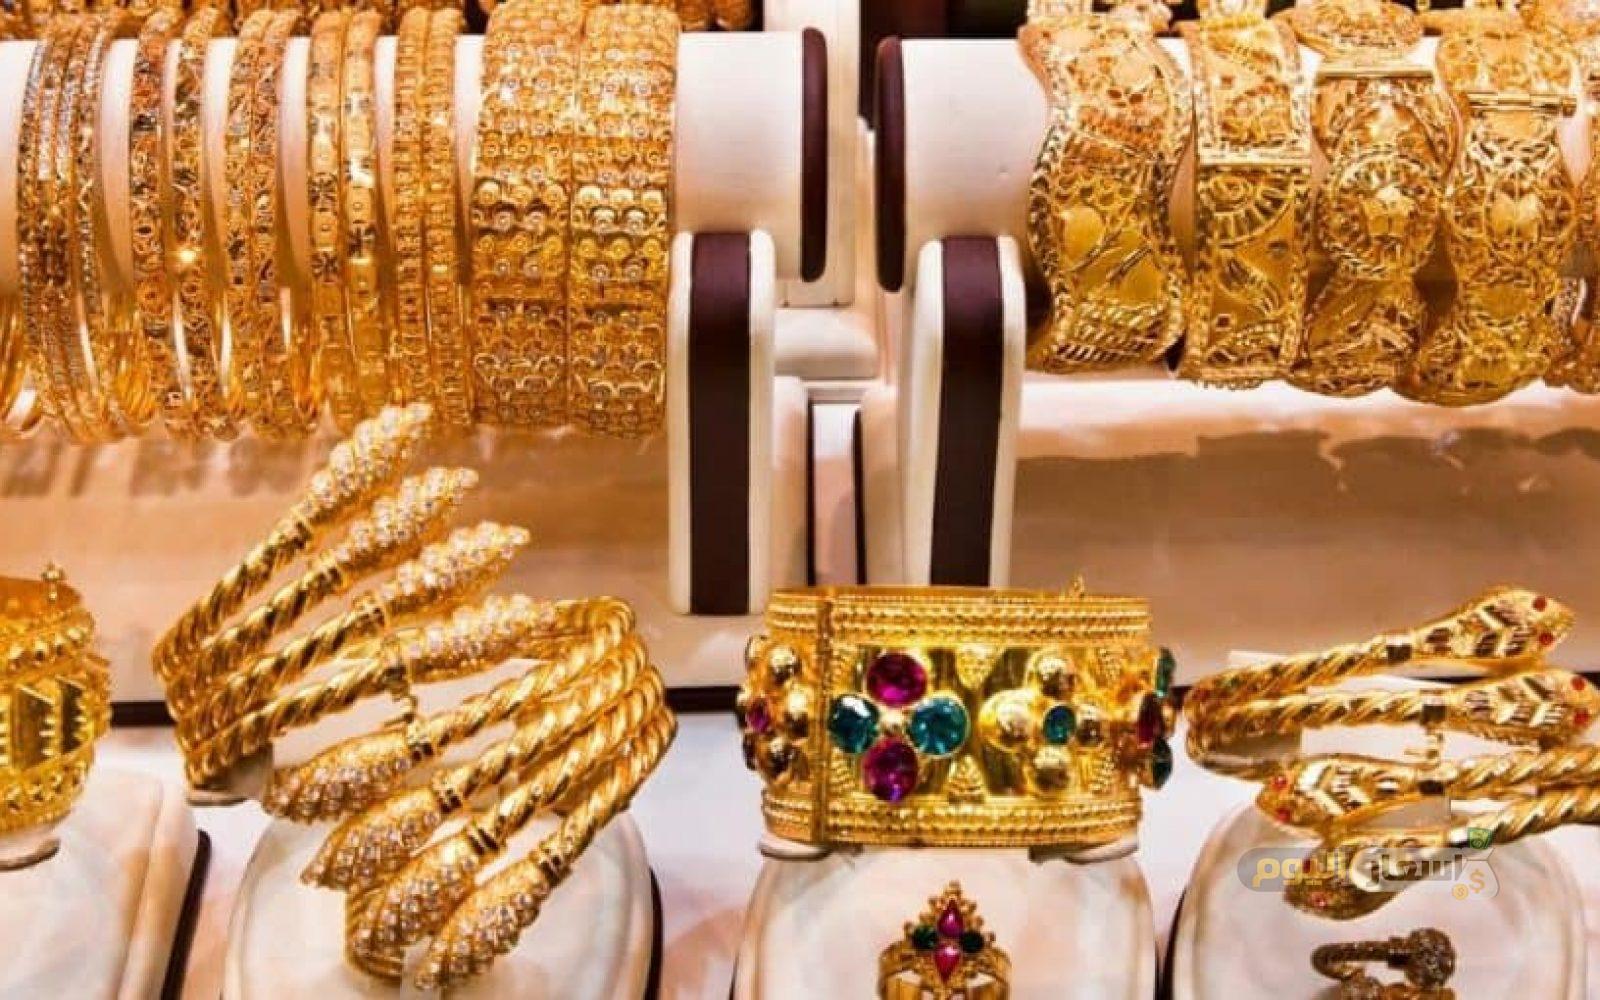 سعر الذهب في قطر